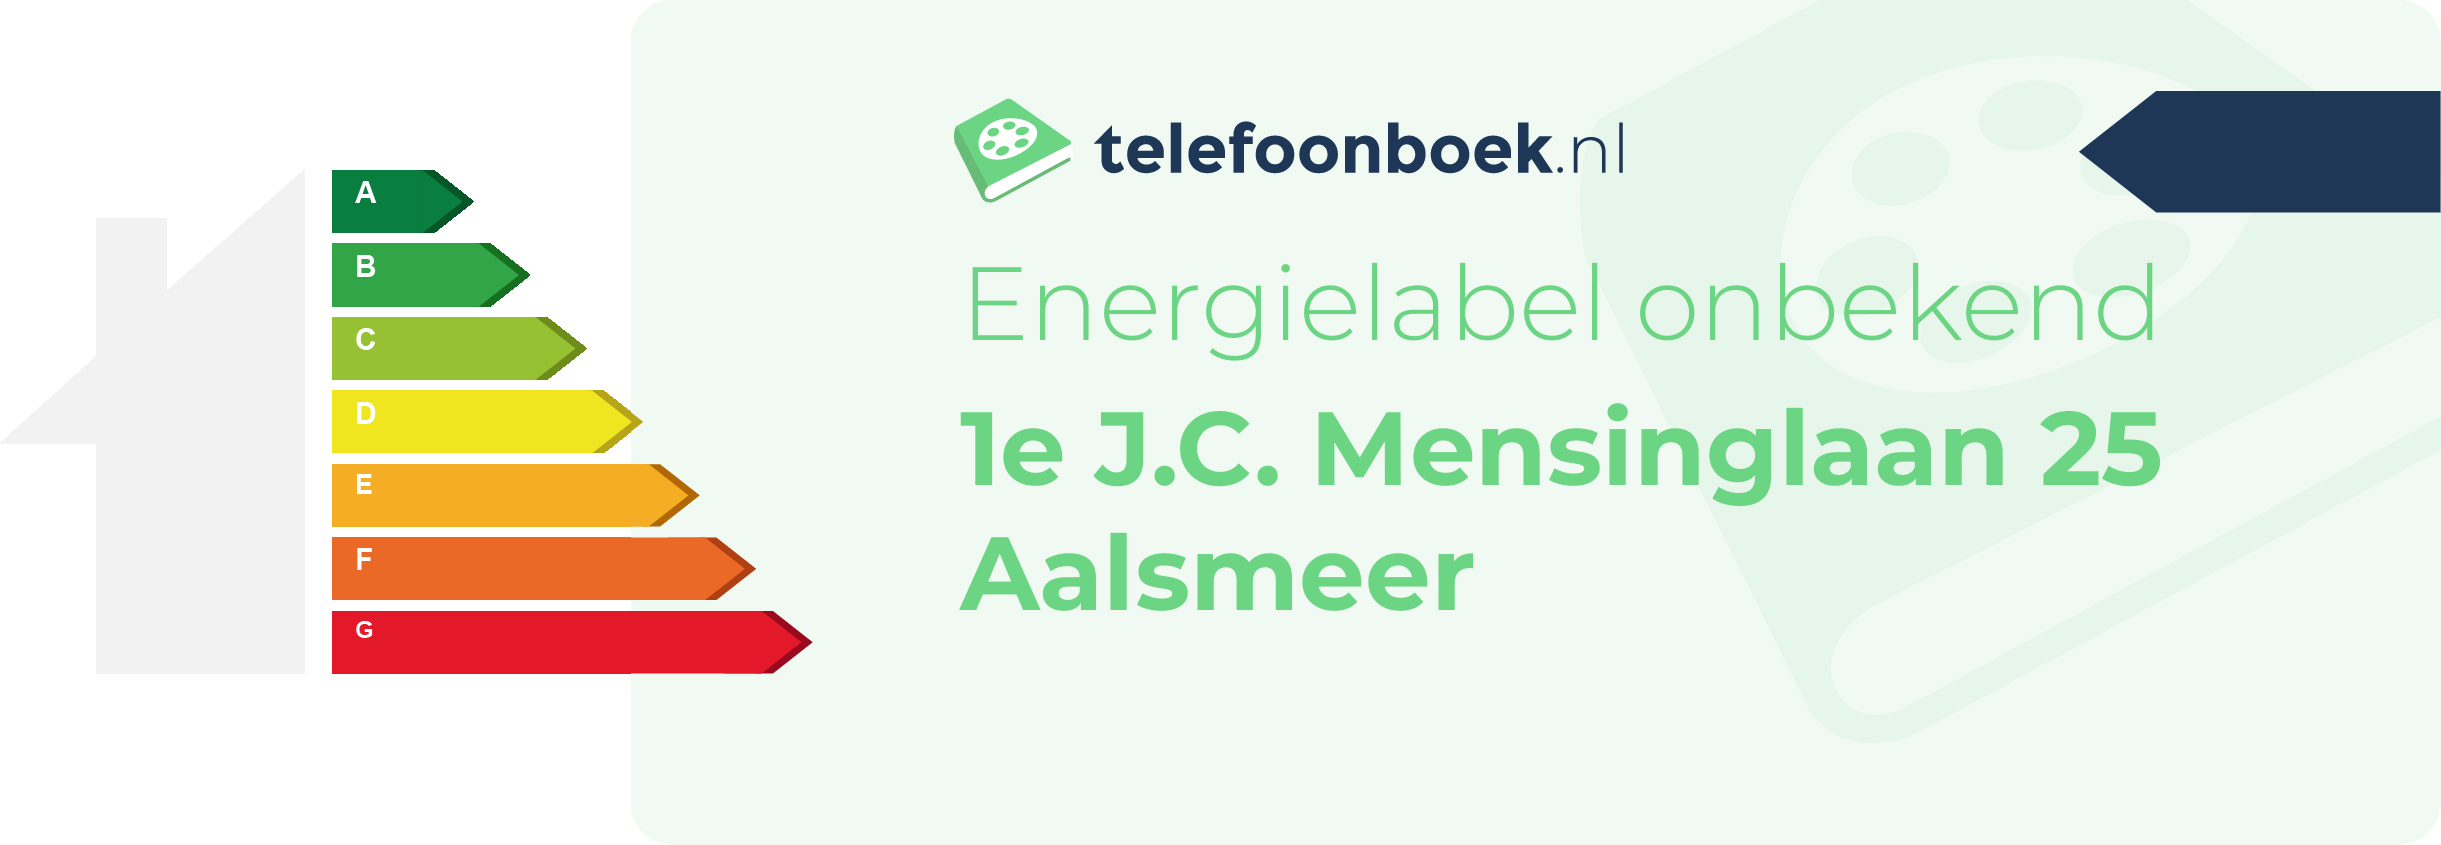 Energielabel 1e J.C. Mensinglaan 25 Aalsmeer